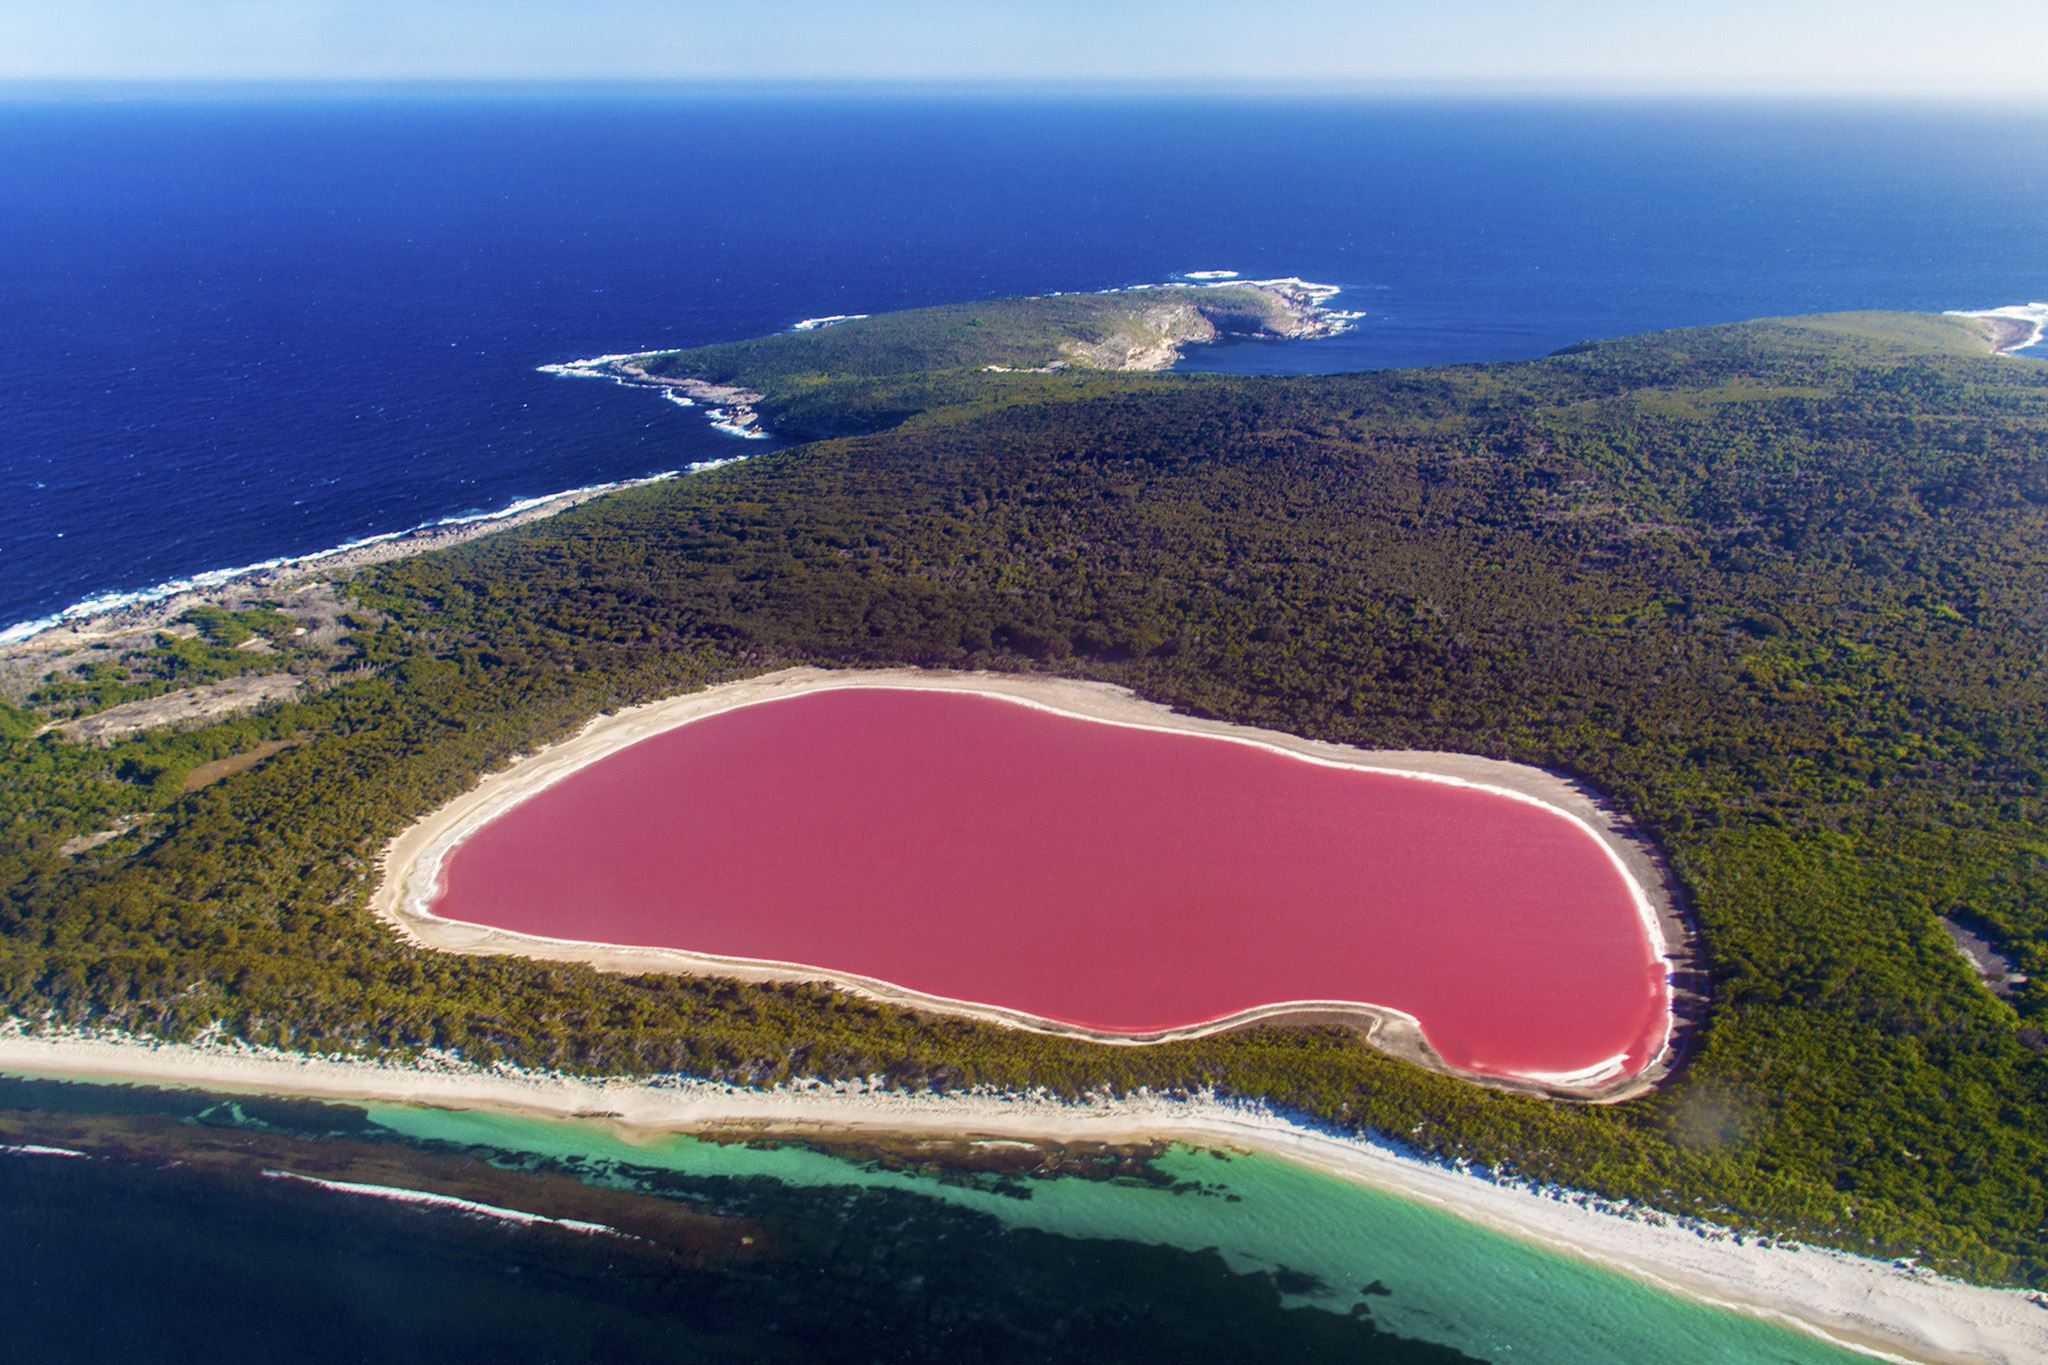 Le lac Hillier : un lac rose exceptionnel en Australie